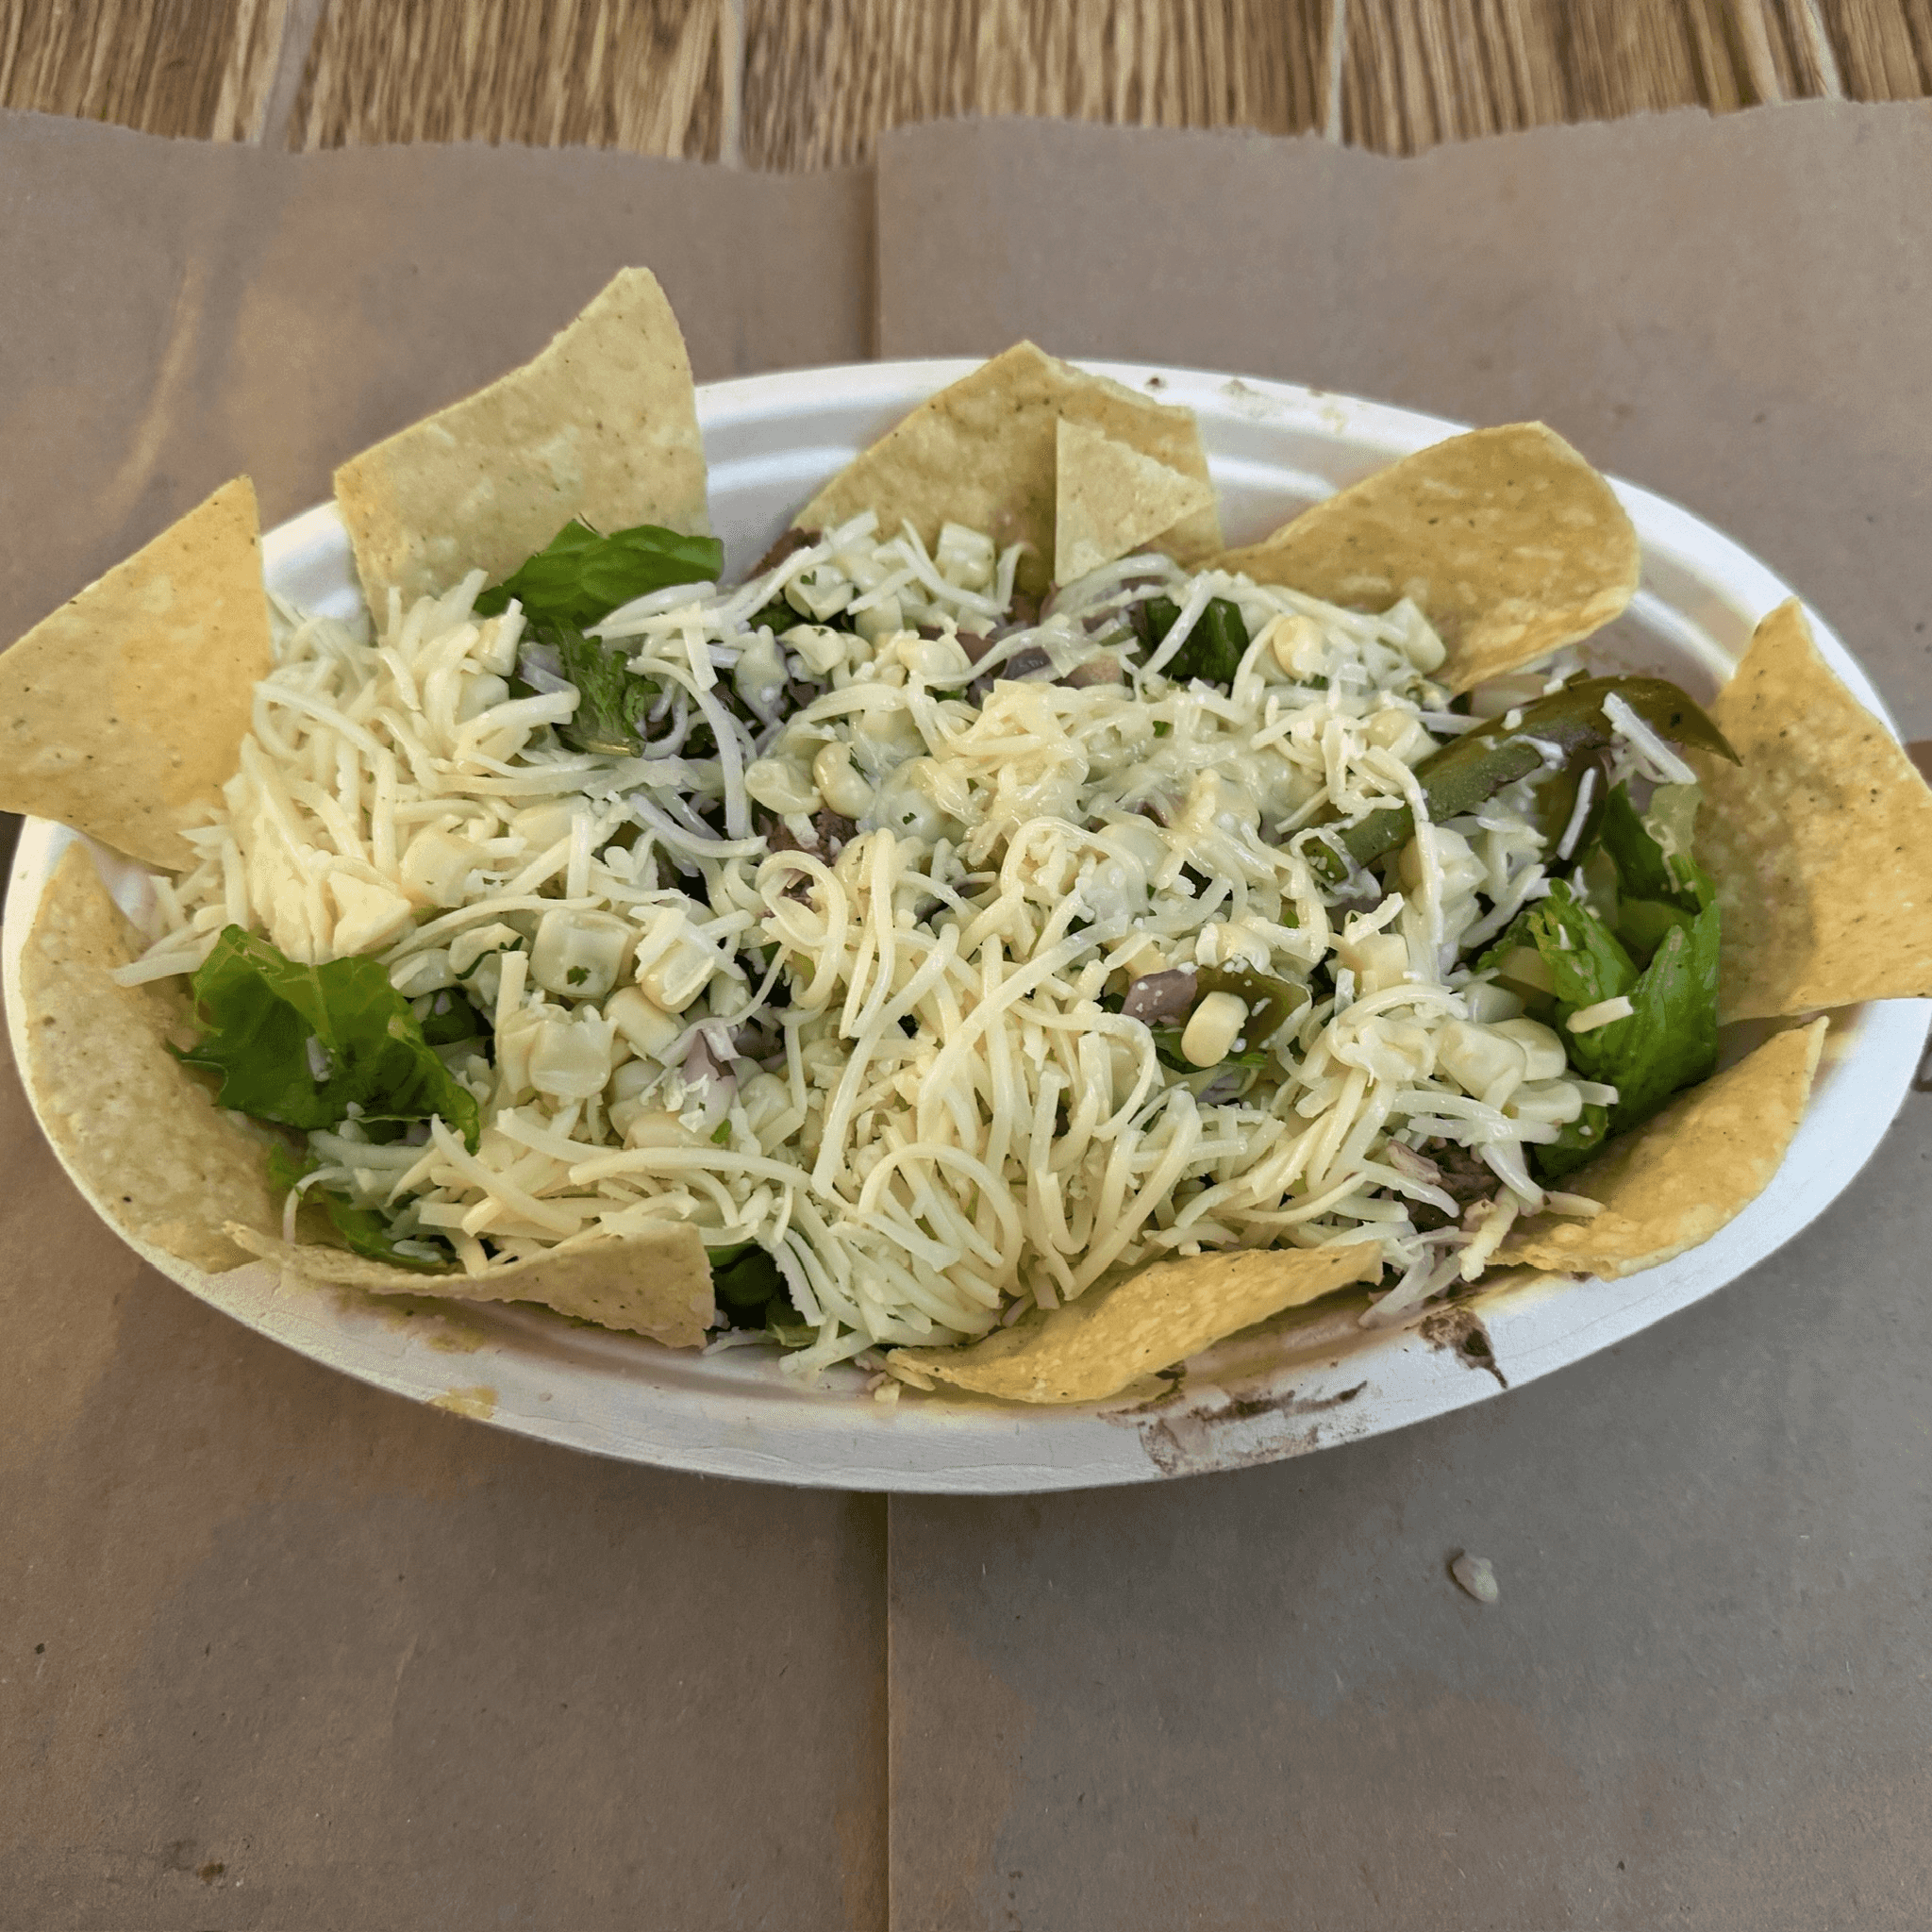 Chipotle Taco Salad | Chipotle Secret Menu